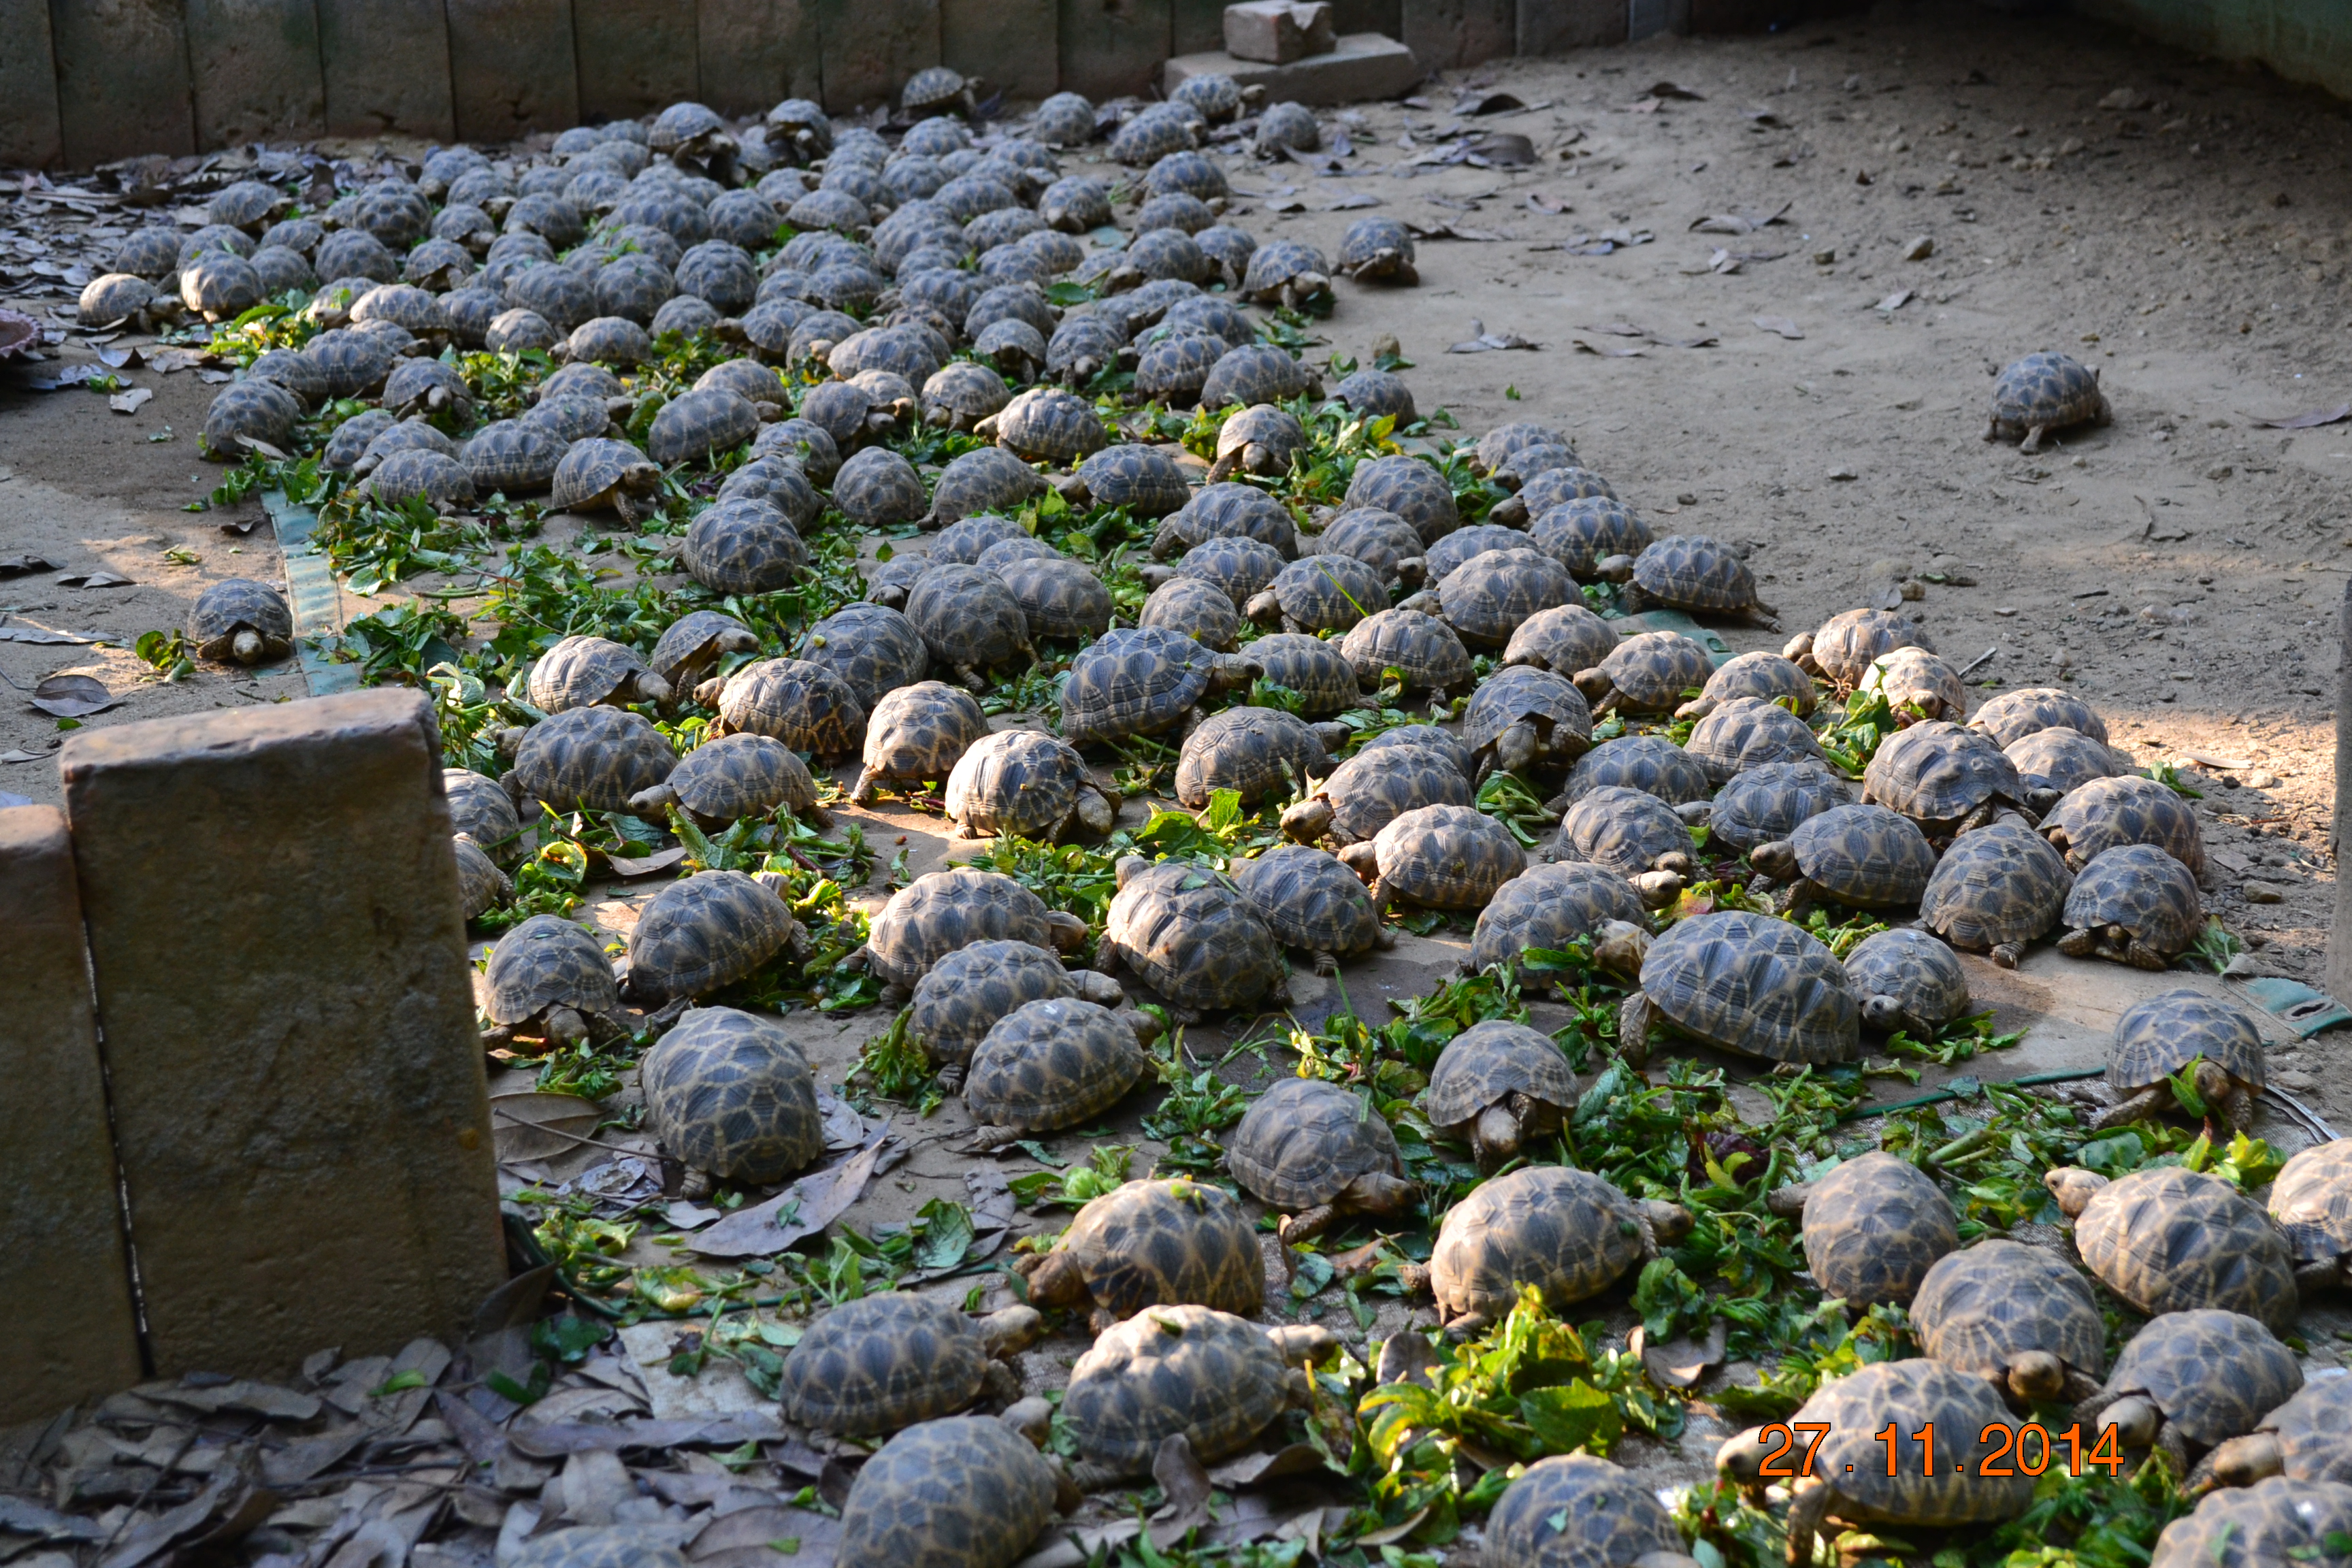 Burmese star tortoise hatchlings. Photo: WCS/TSA